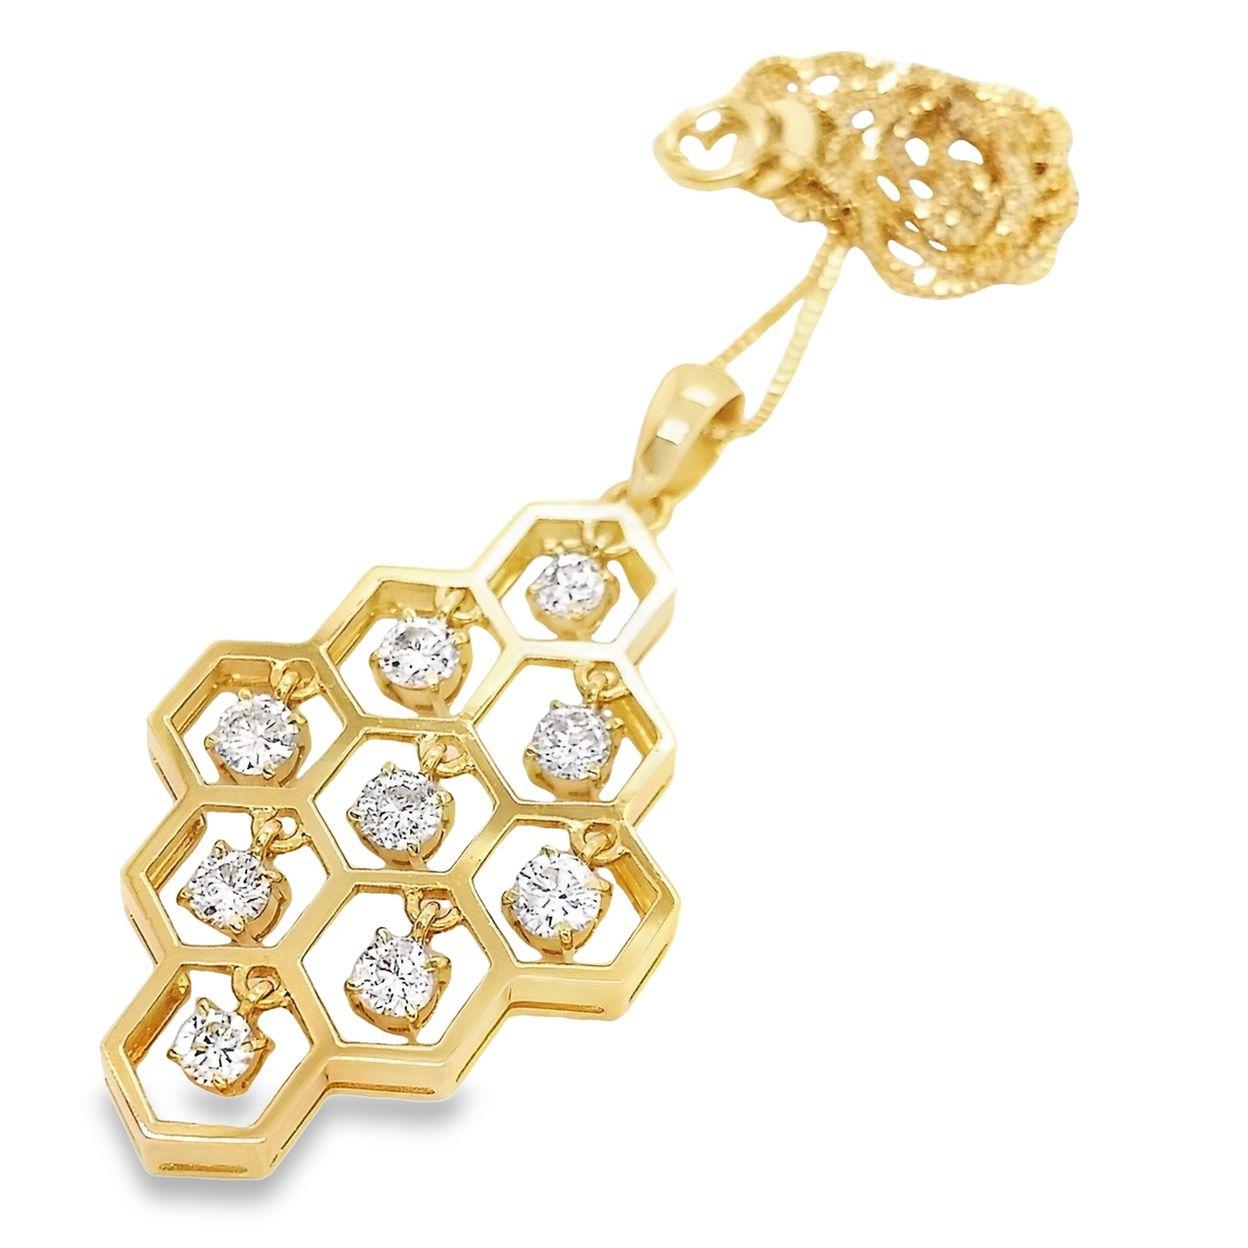 Diese schicke Halskette aus 18 Kt. Gelbgold aus dem Hause Top Crown Jewelry ist ein einzigartiges Schmuckstück, inspiriert von der zarten Komplexität eines traditionellen und verfügt über 9 runde brillante natürliche funkelnde Diamanten von